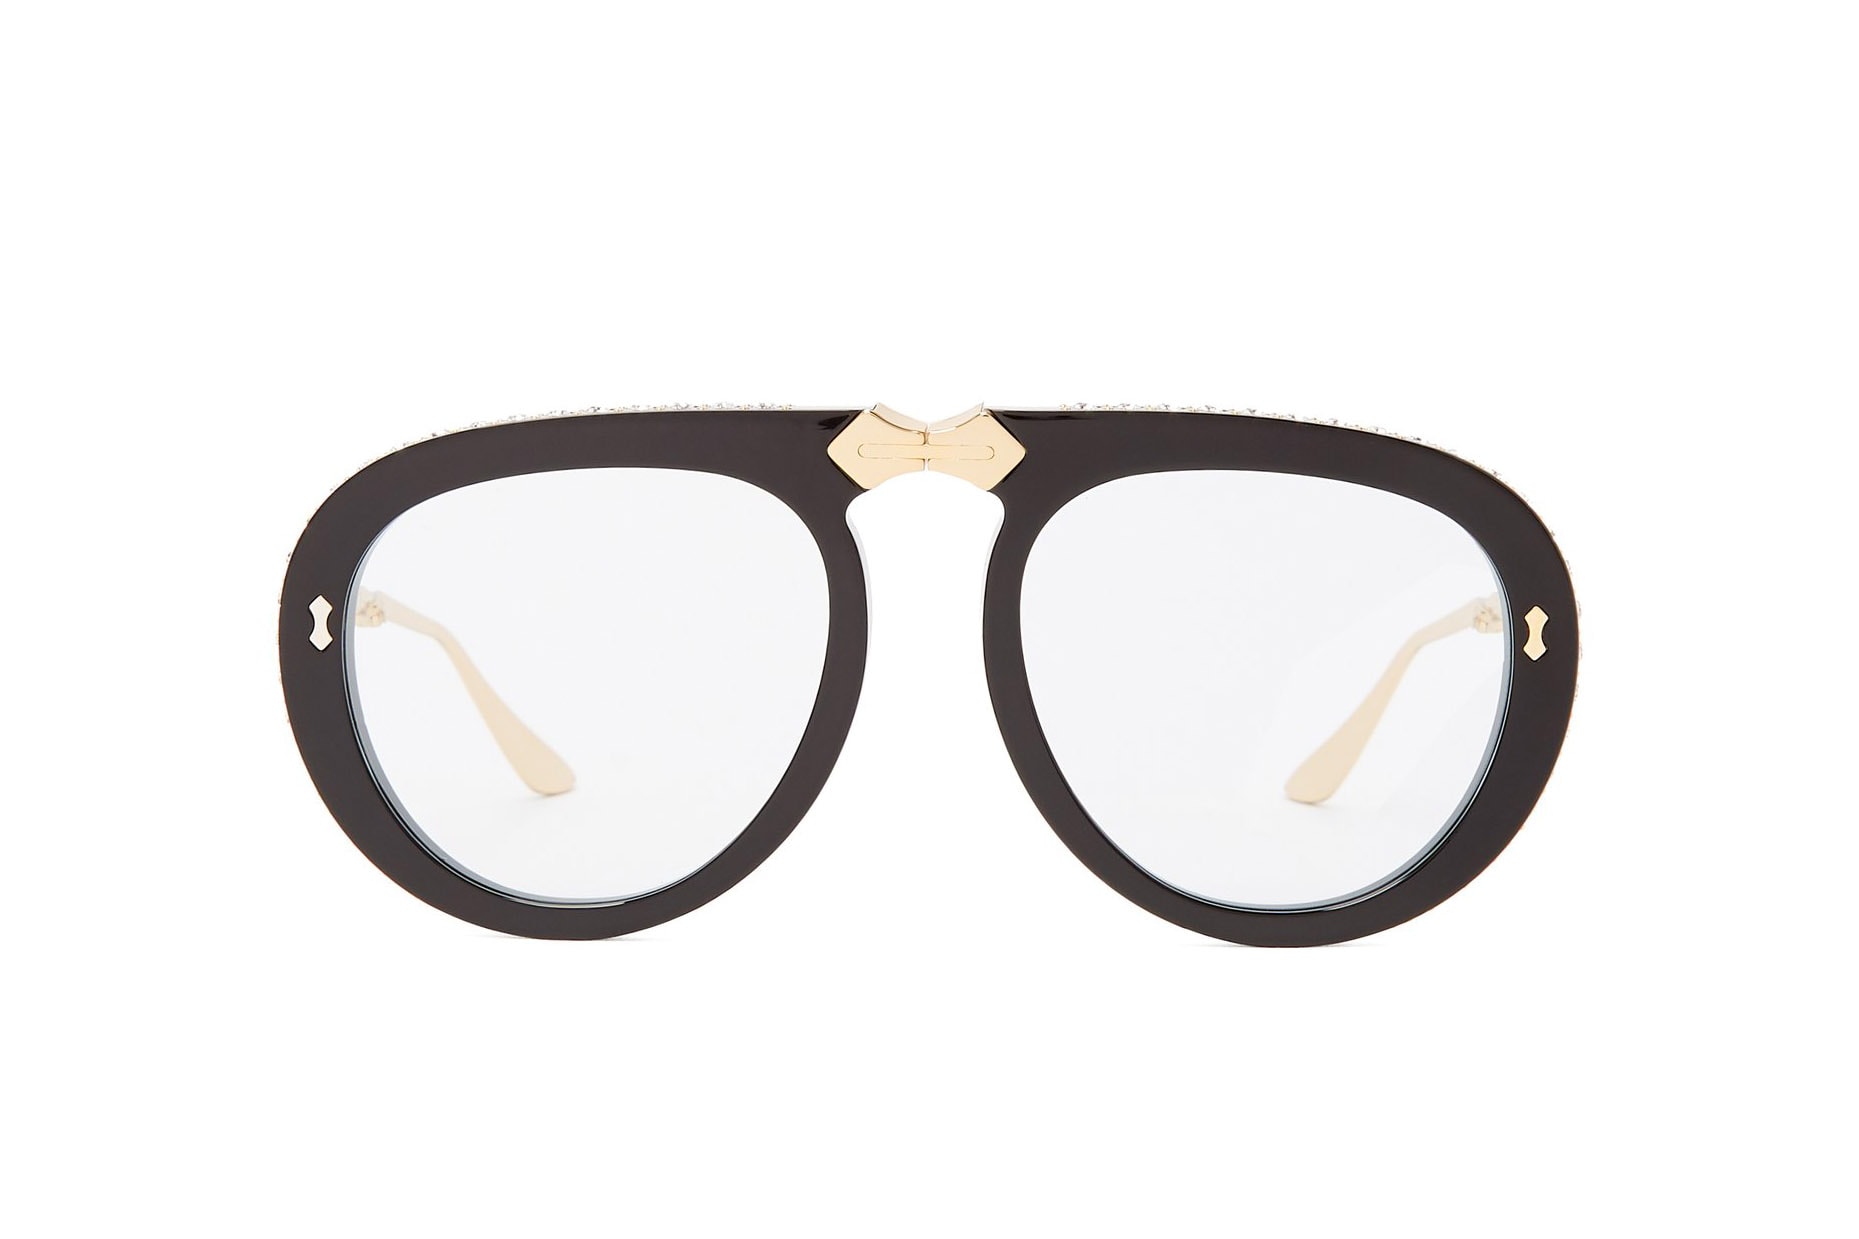 Gucci Foldable Round-Frame Embellished Sunglasses Black Crystal Gold Tone Hardware Statement Eyewear Shades